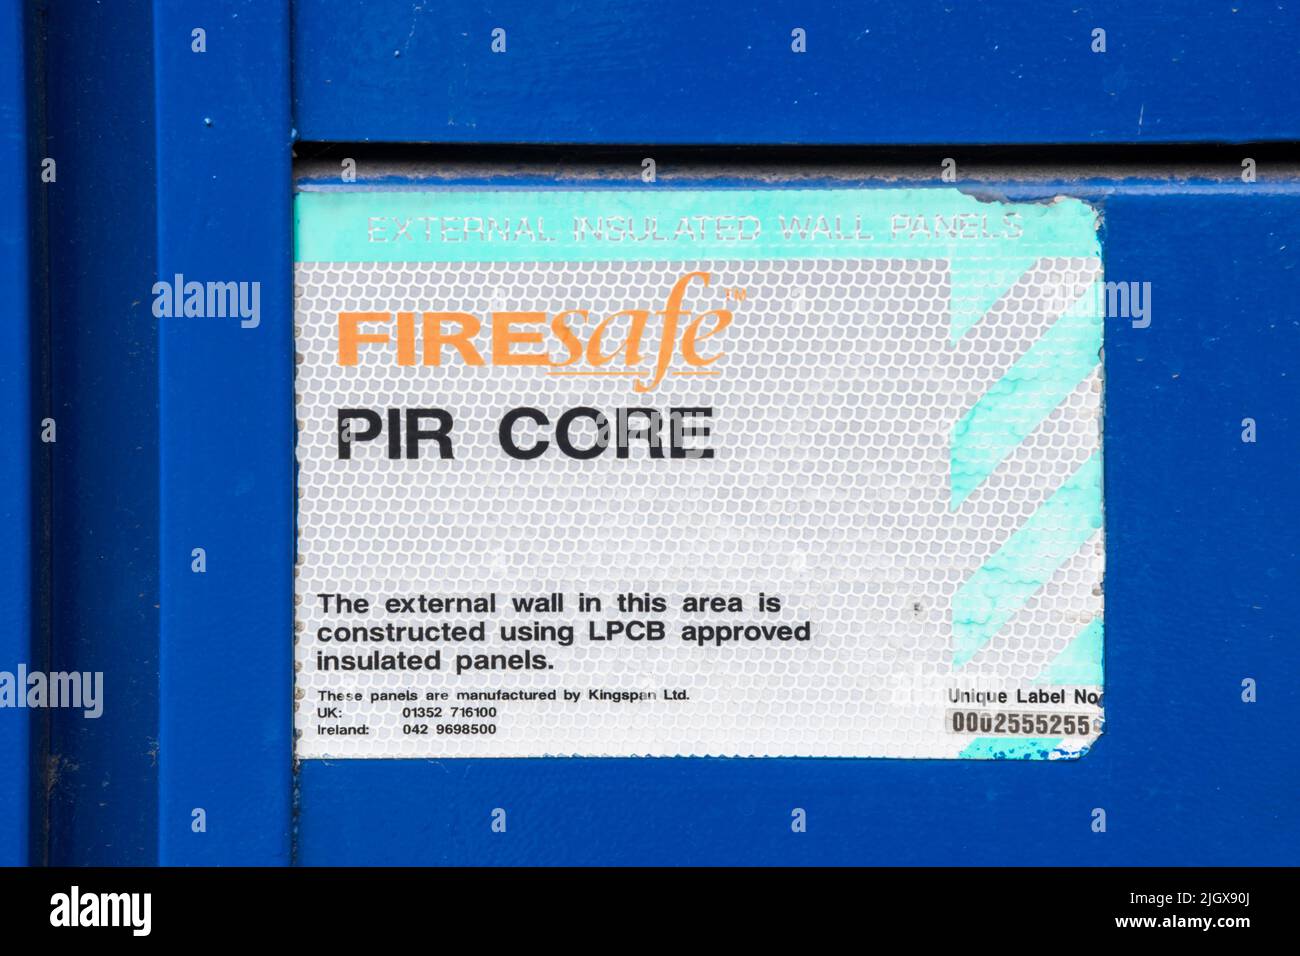 Auf dem Etikett an der Gebäudewand steht, dass die Konstruktion mit LPCB-geprüften externen isolierten Wandpaneelen mit Kingspan Firesafe PIR Core ausgeführt wurde. Stockfoto